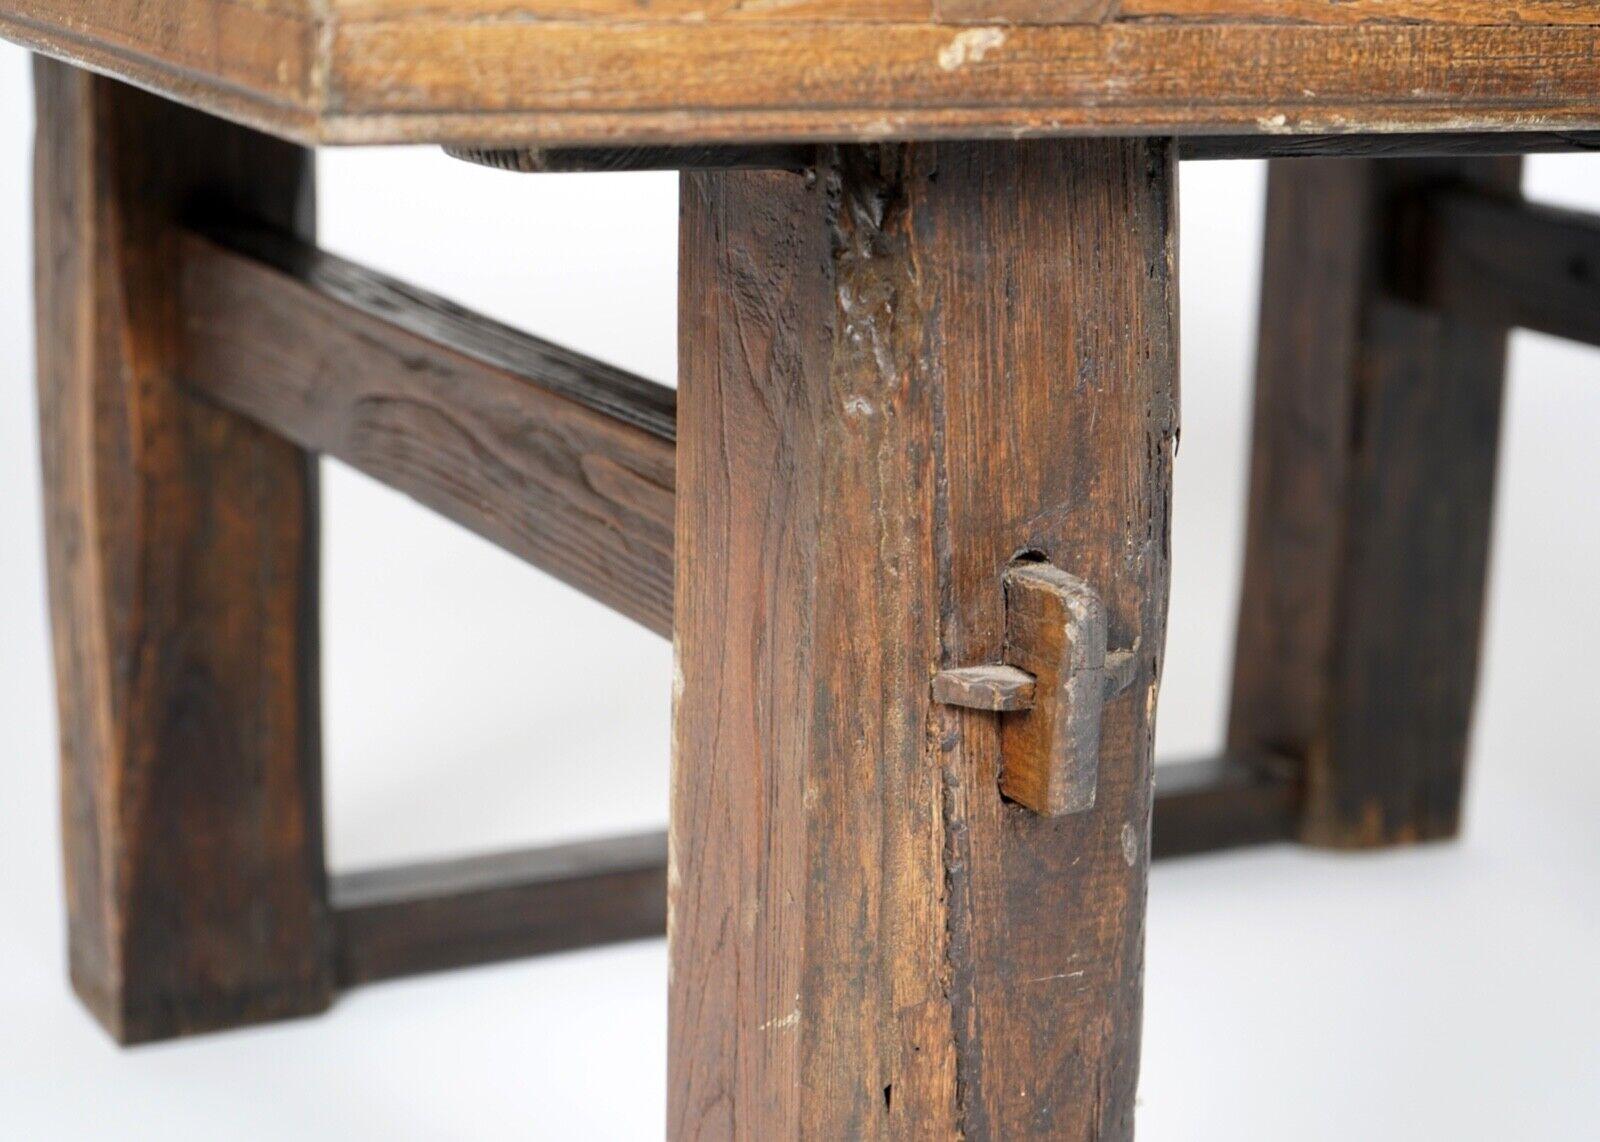 British Antique Wooden Rustic Primitive Rectangular Coffee Table